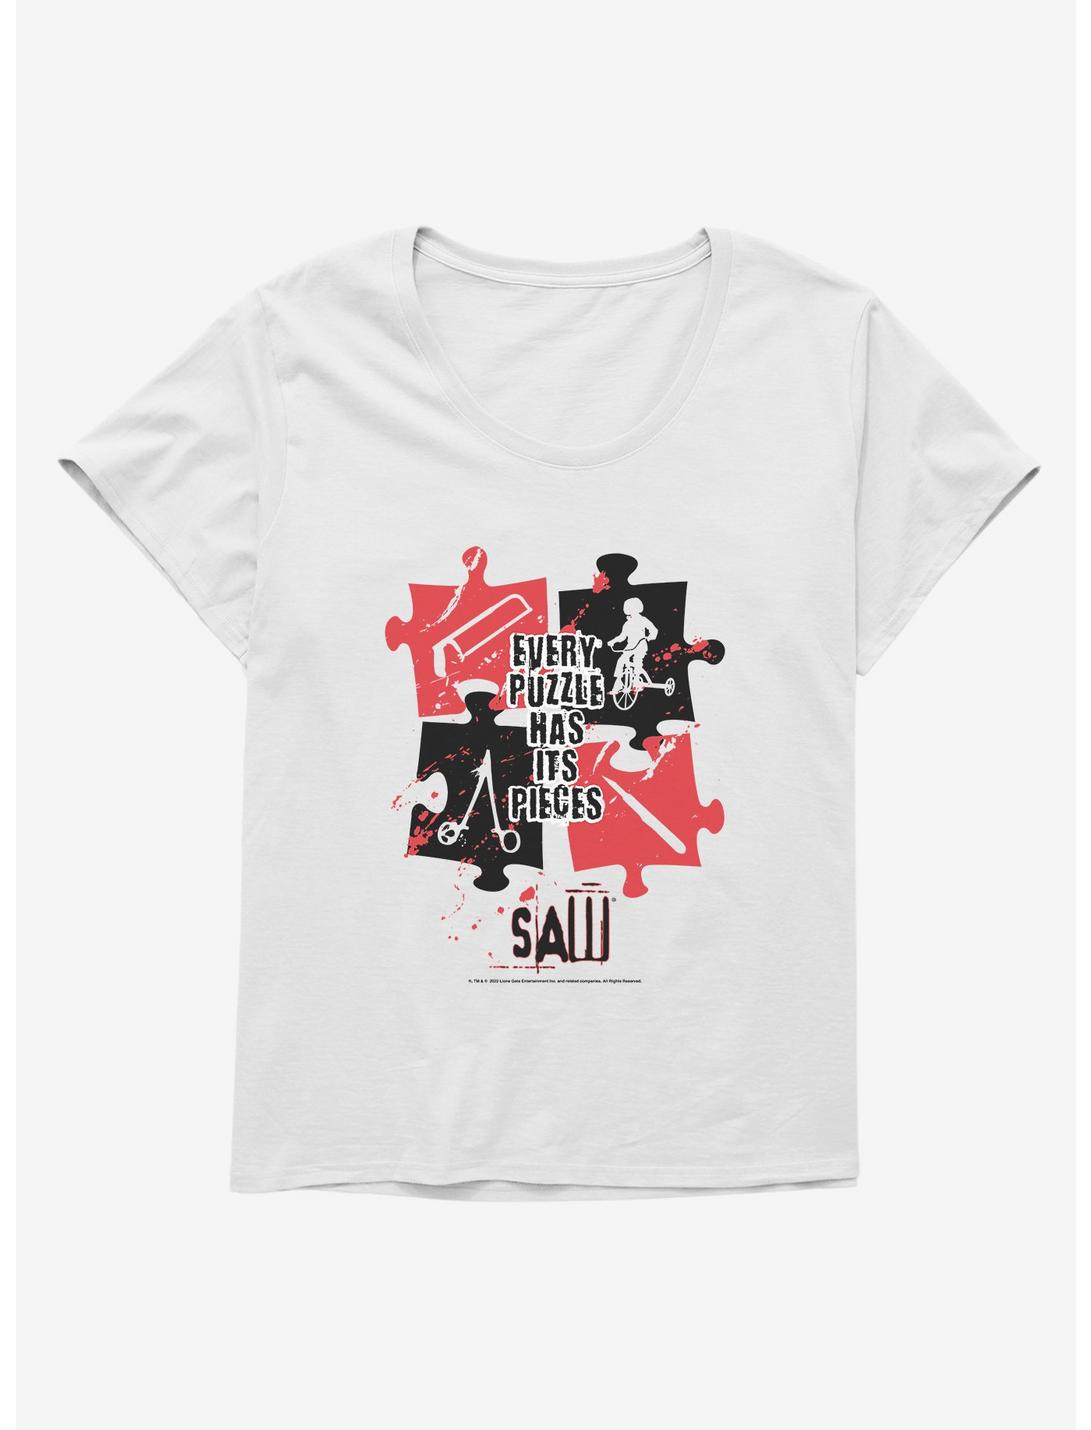 Saw Puzzle Pieces Girls T-Shirt Plus Size, , hi-res